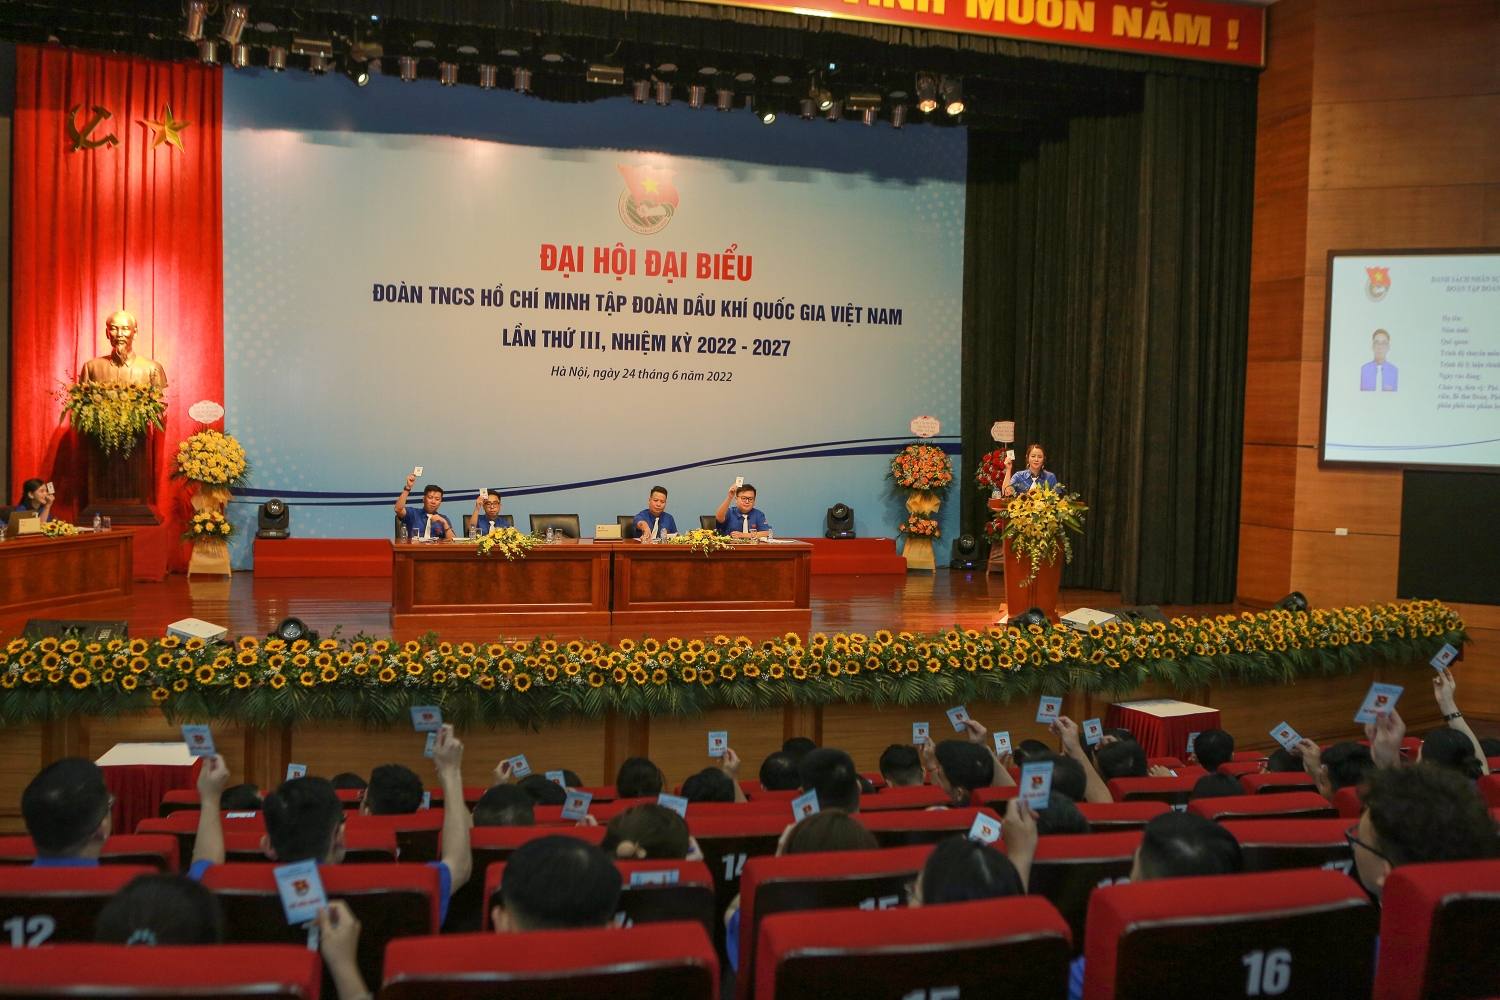 Khai mạc phiên thứ nhất Đại hội đại biểu Đoàn Thanh niên Tập đoàn lần thứ III, nhiệm kỳ 2022-2027